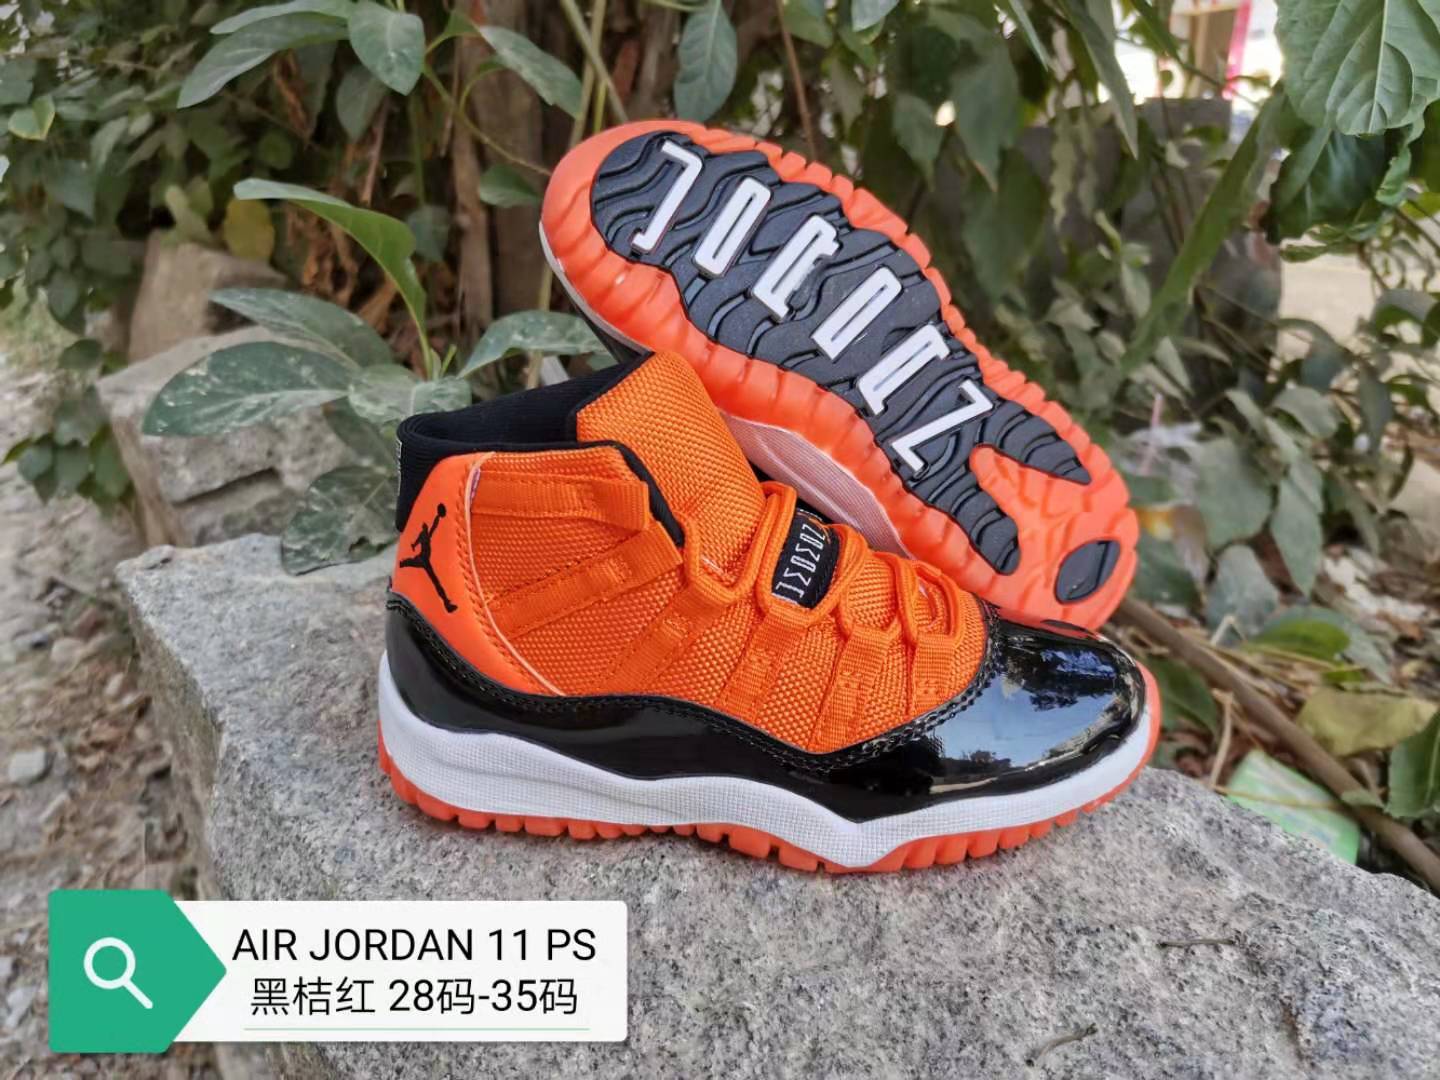 2019 Kids Air Jordan 11 Orange Black White Shoes